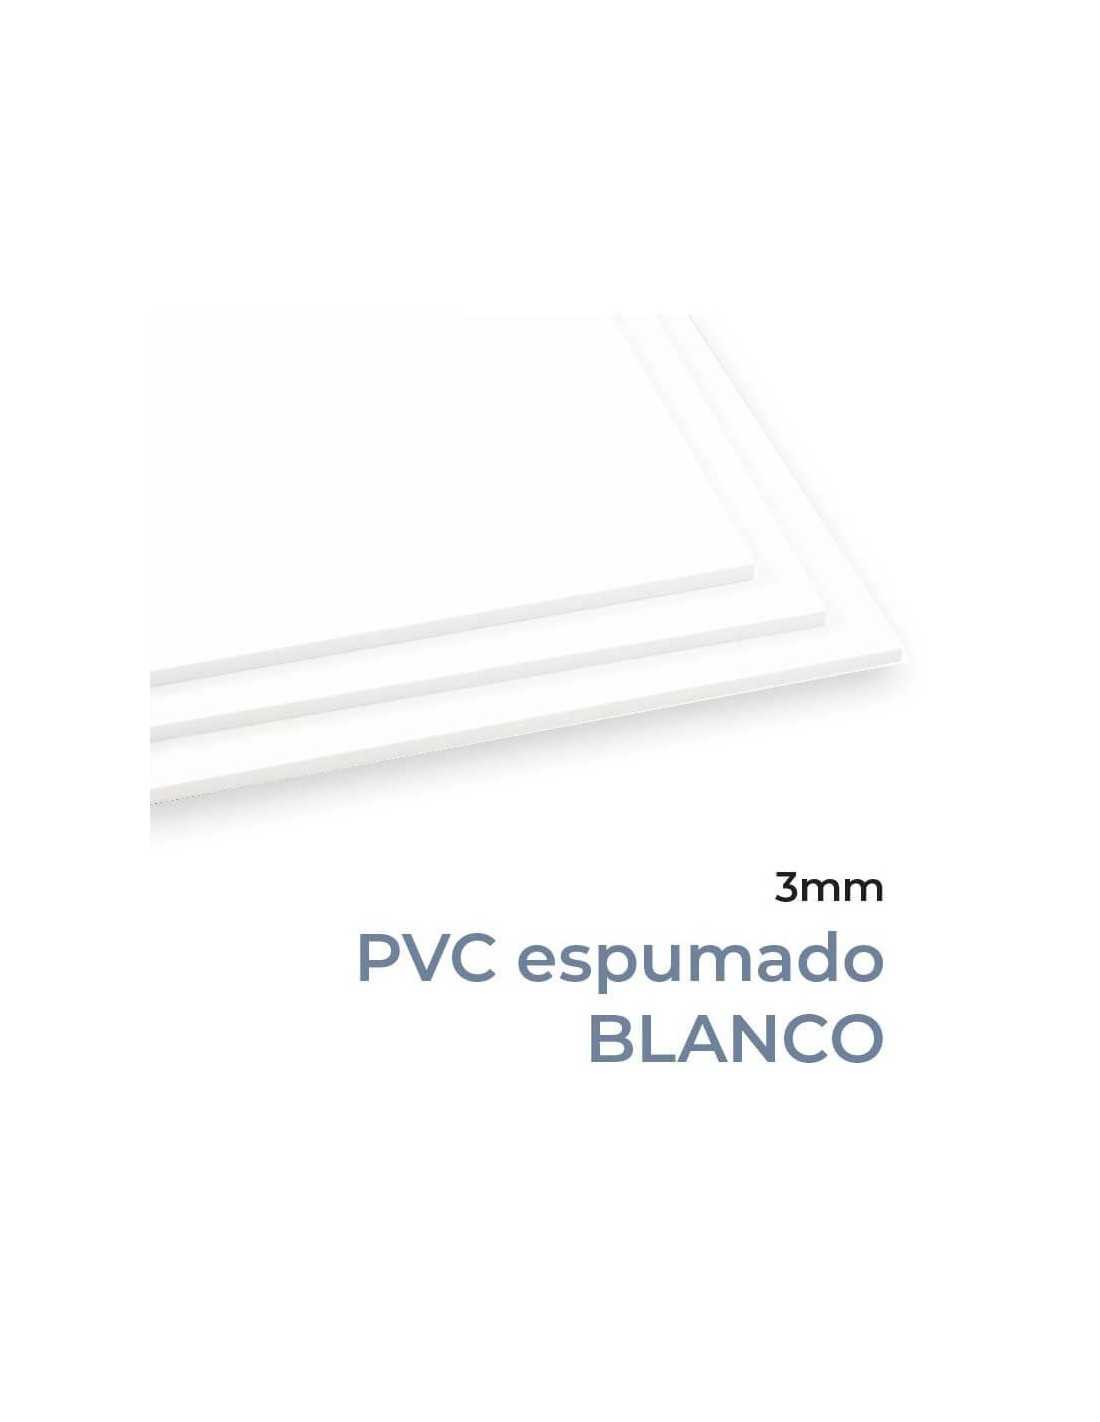 PLANCHA DE PVC 20MM